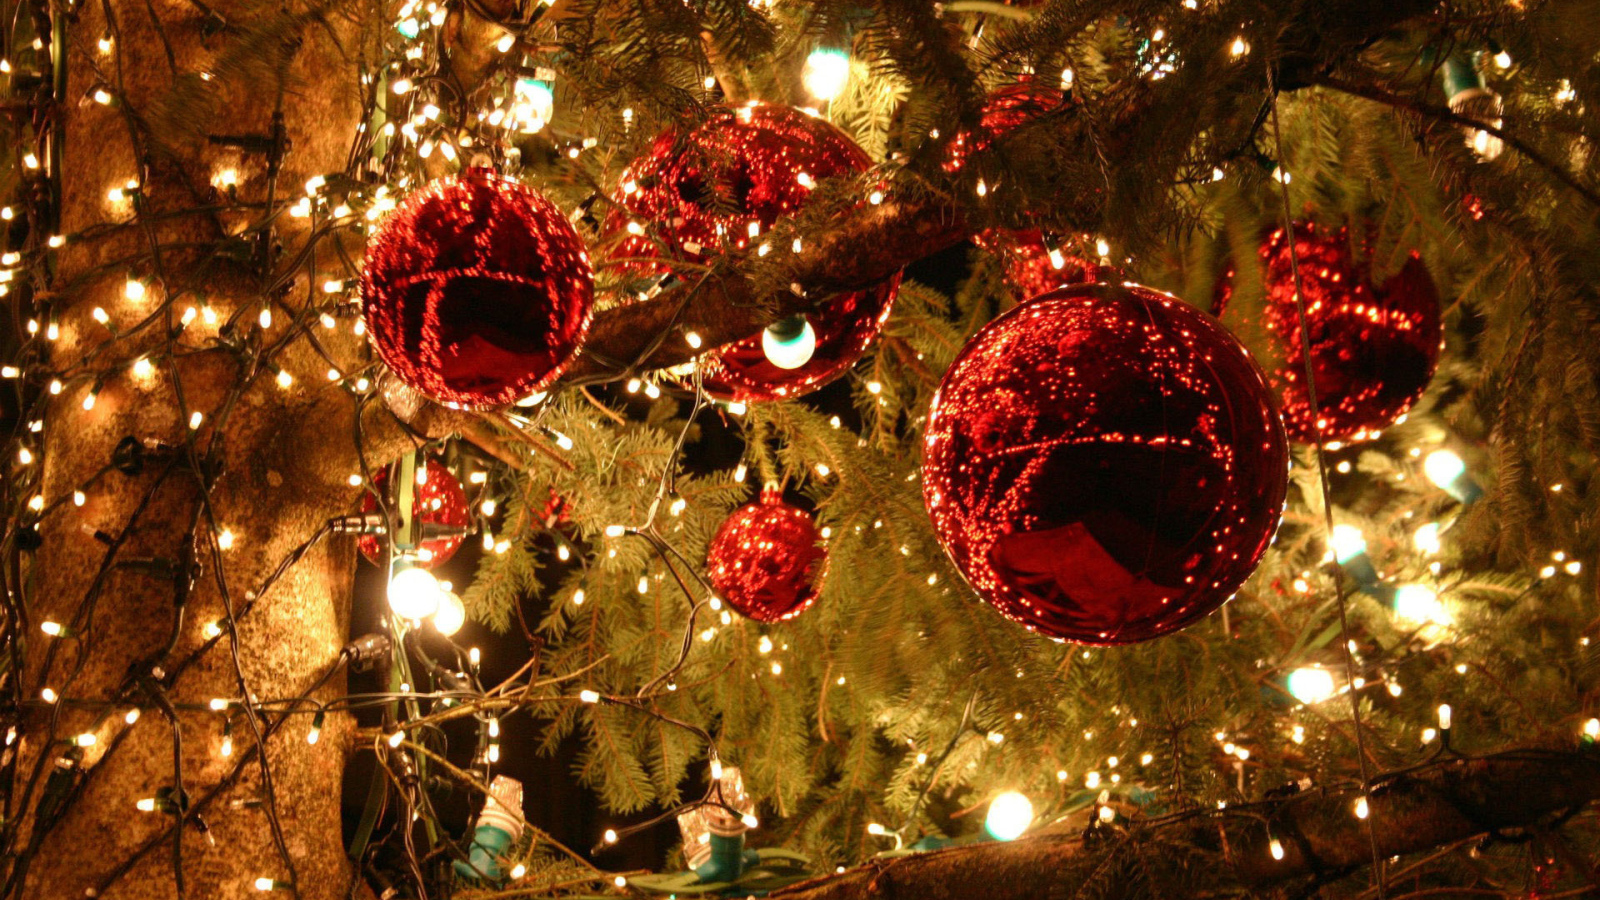 Hãy ngắm nhìn bức tranh Giáng Sinh đầy màu sắc và ấm áp này! Mọi thứ đều tỏa sáng trong không khí lễ hội rộn ràng của mùa Giáng Sinh. Bài trang trí này chắc chắn sẽ mang đến cho bạn niềm vui và hứng khởi cho ngày lễ tuyệt vời đang đến gần.